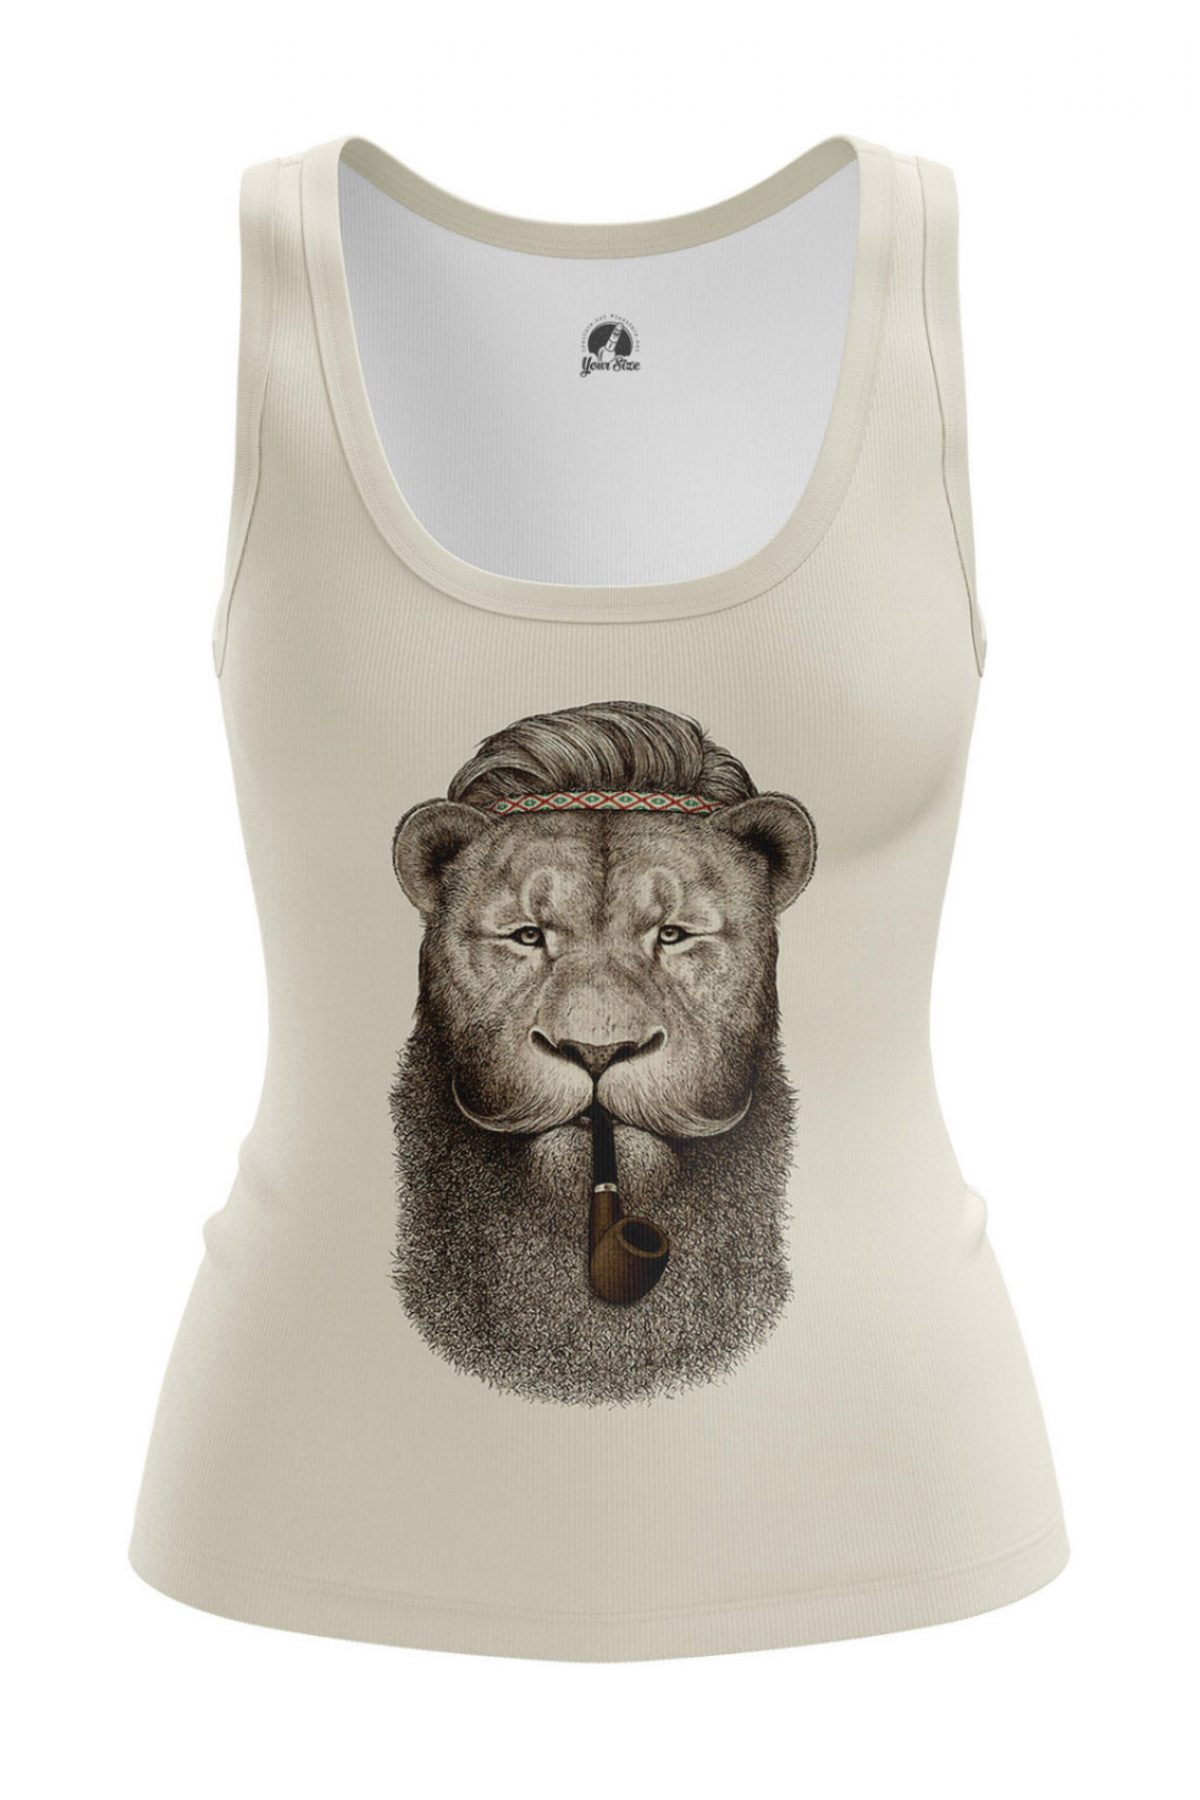 Buy Women's tank Hippie Lion Animals Lions Hippie Lion Vest - IdolStore